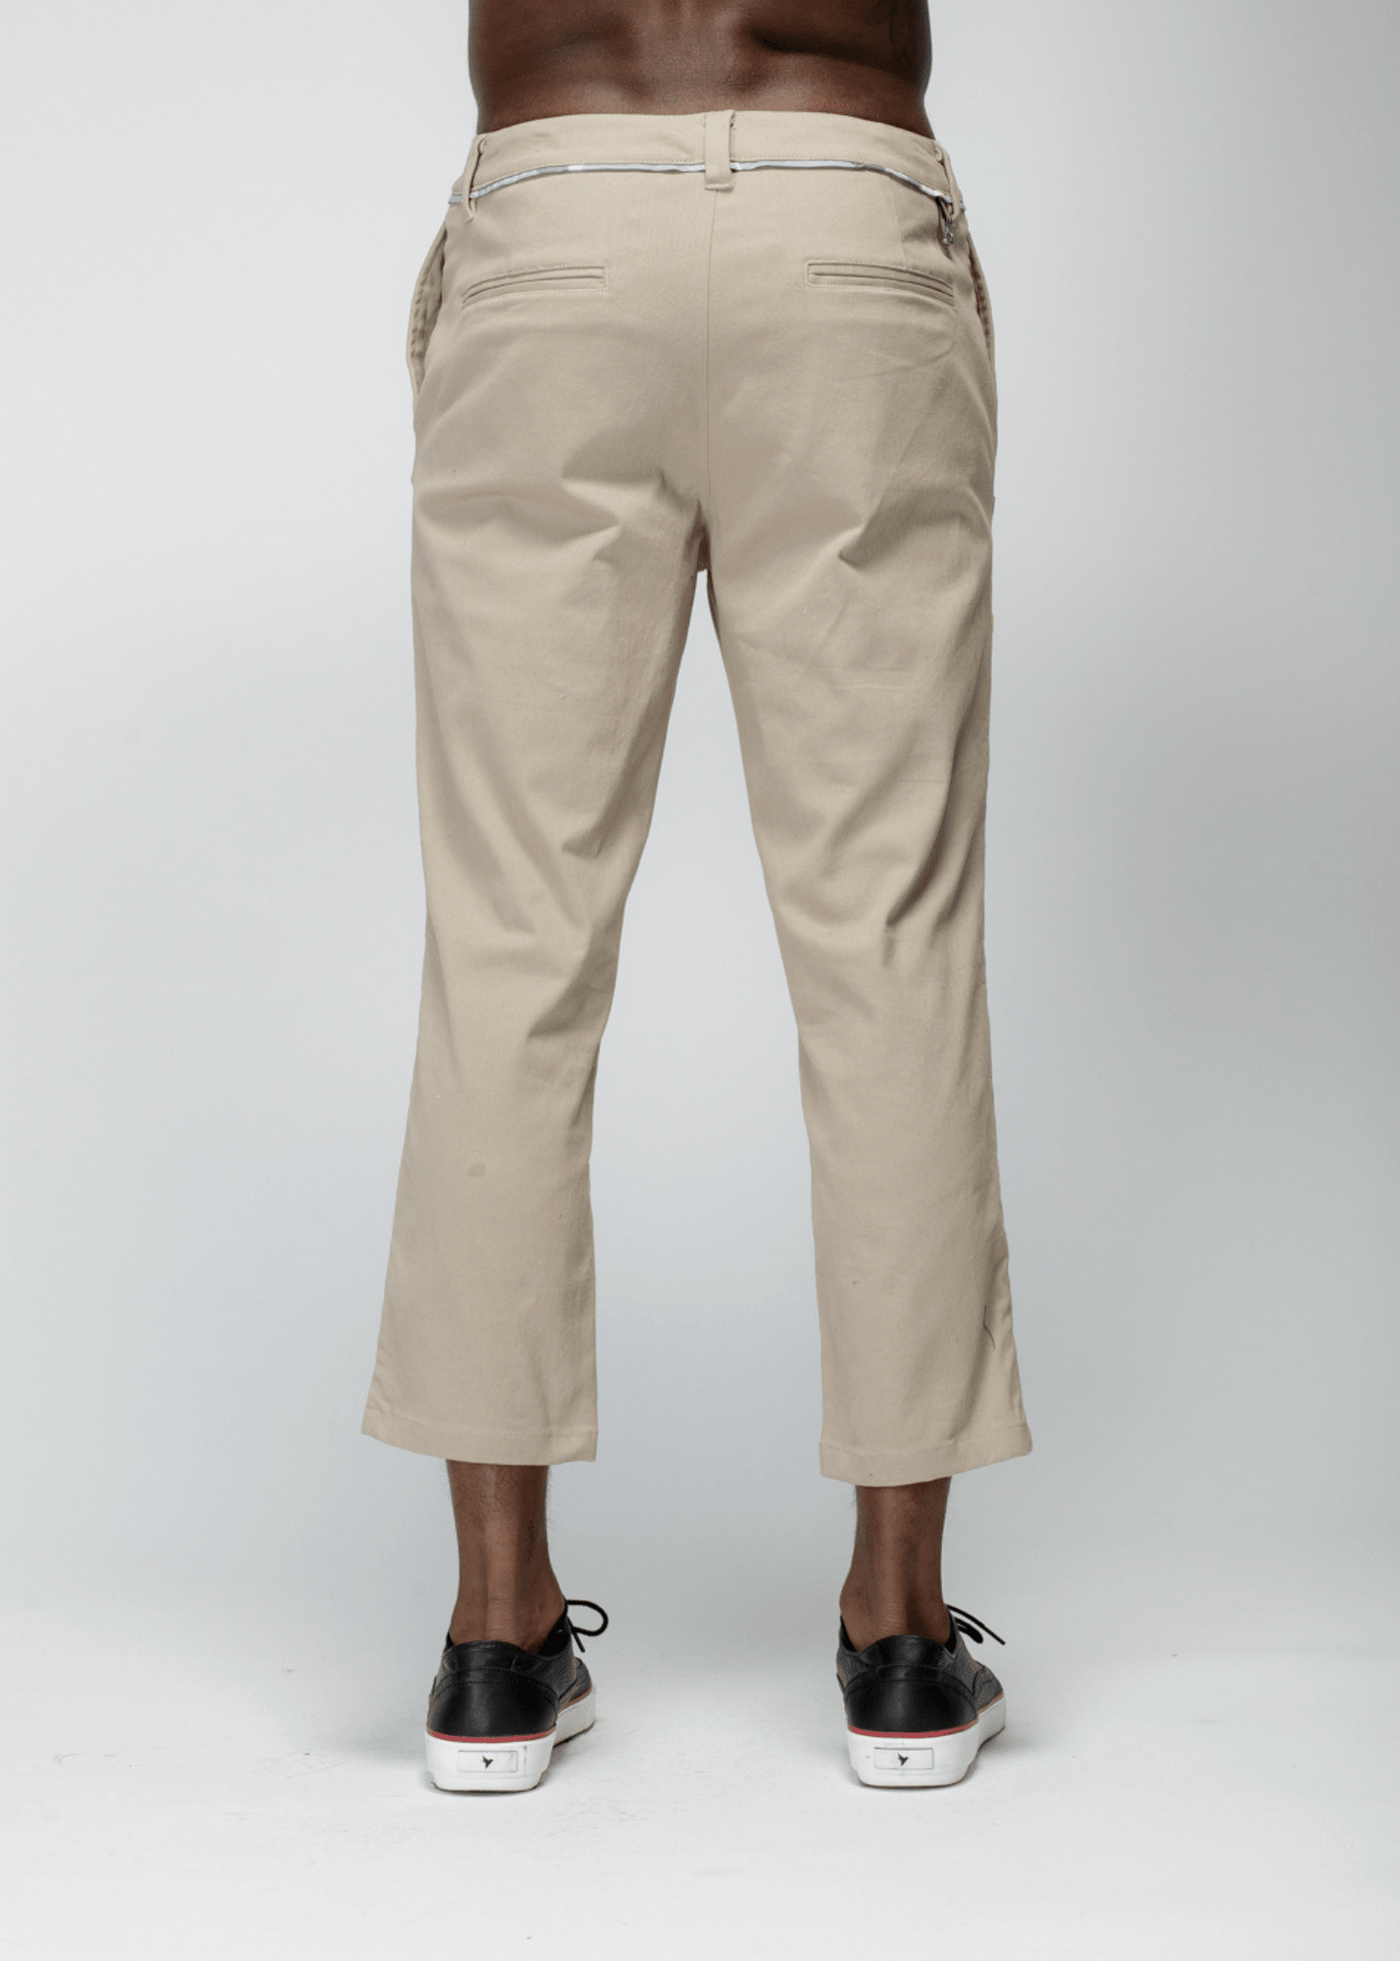 Konus Men's Cropped Side Zip Pants in Tan by Shop at Konus